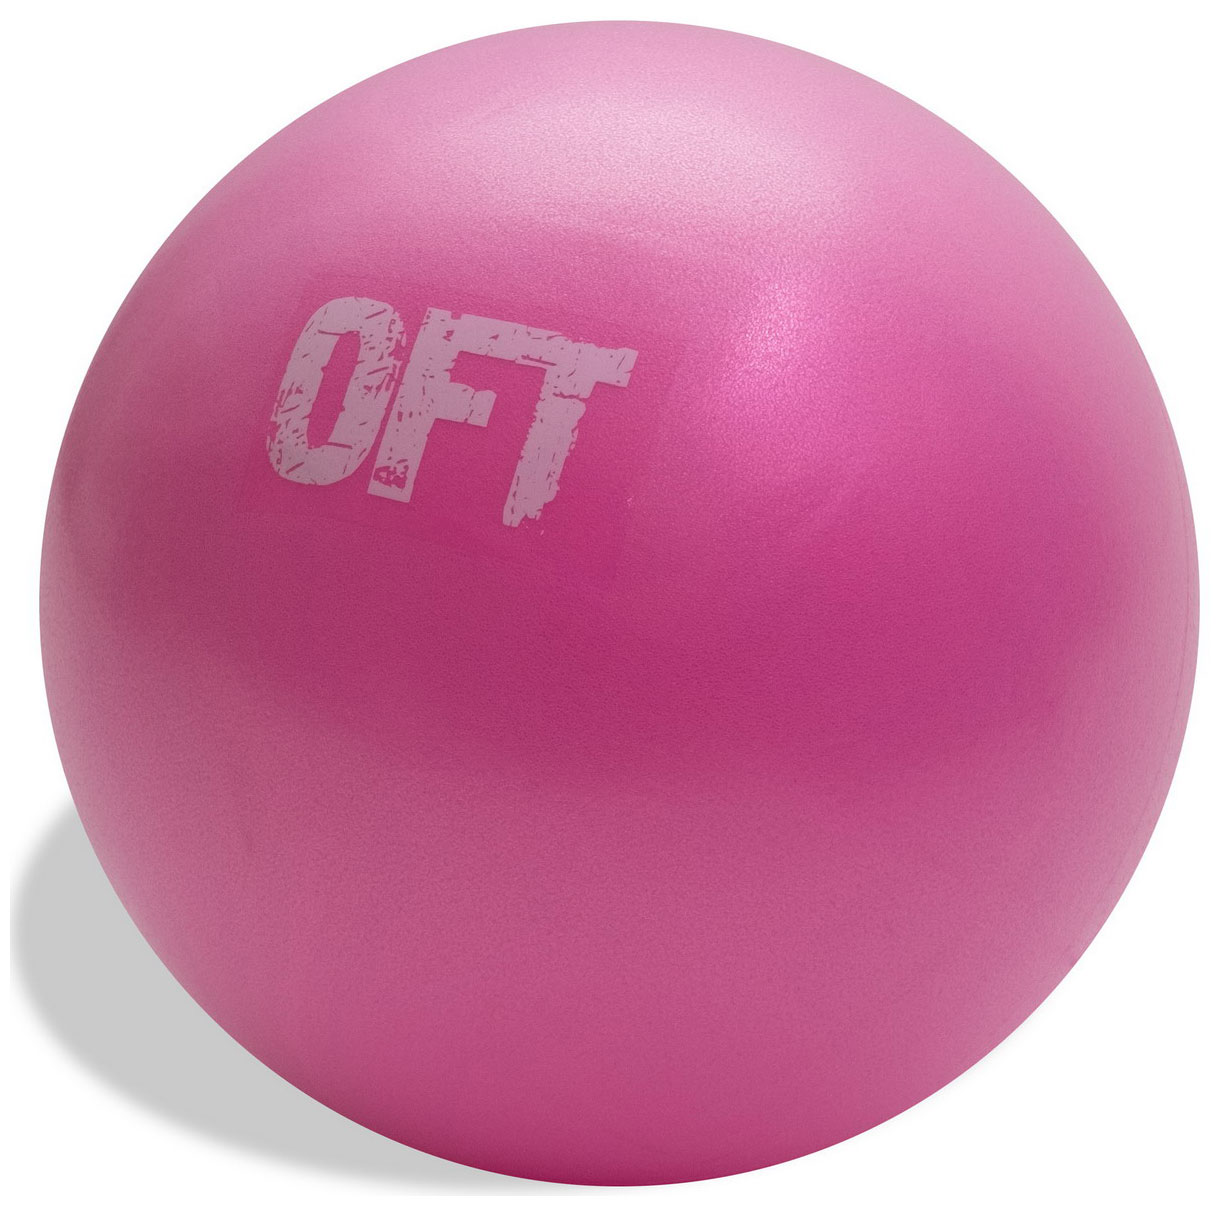 Мяч для пилатес 20 см Original FitTools FT-PBL-19 мяч для фитнеса original fittools мяч для пилатес 20 см pink